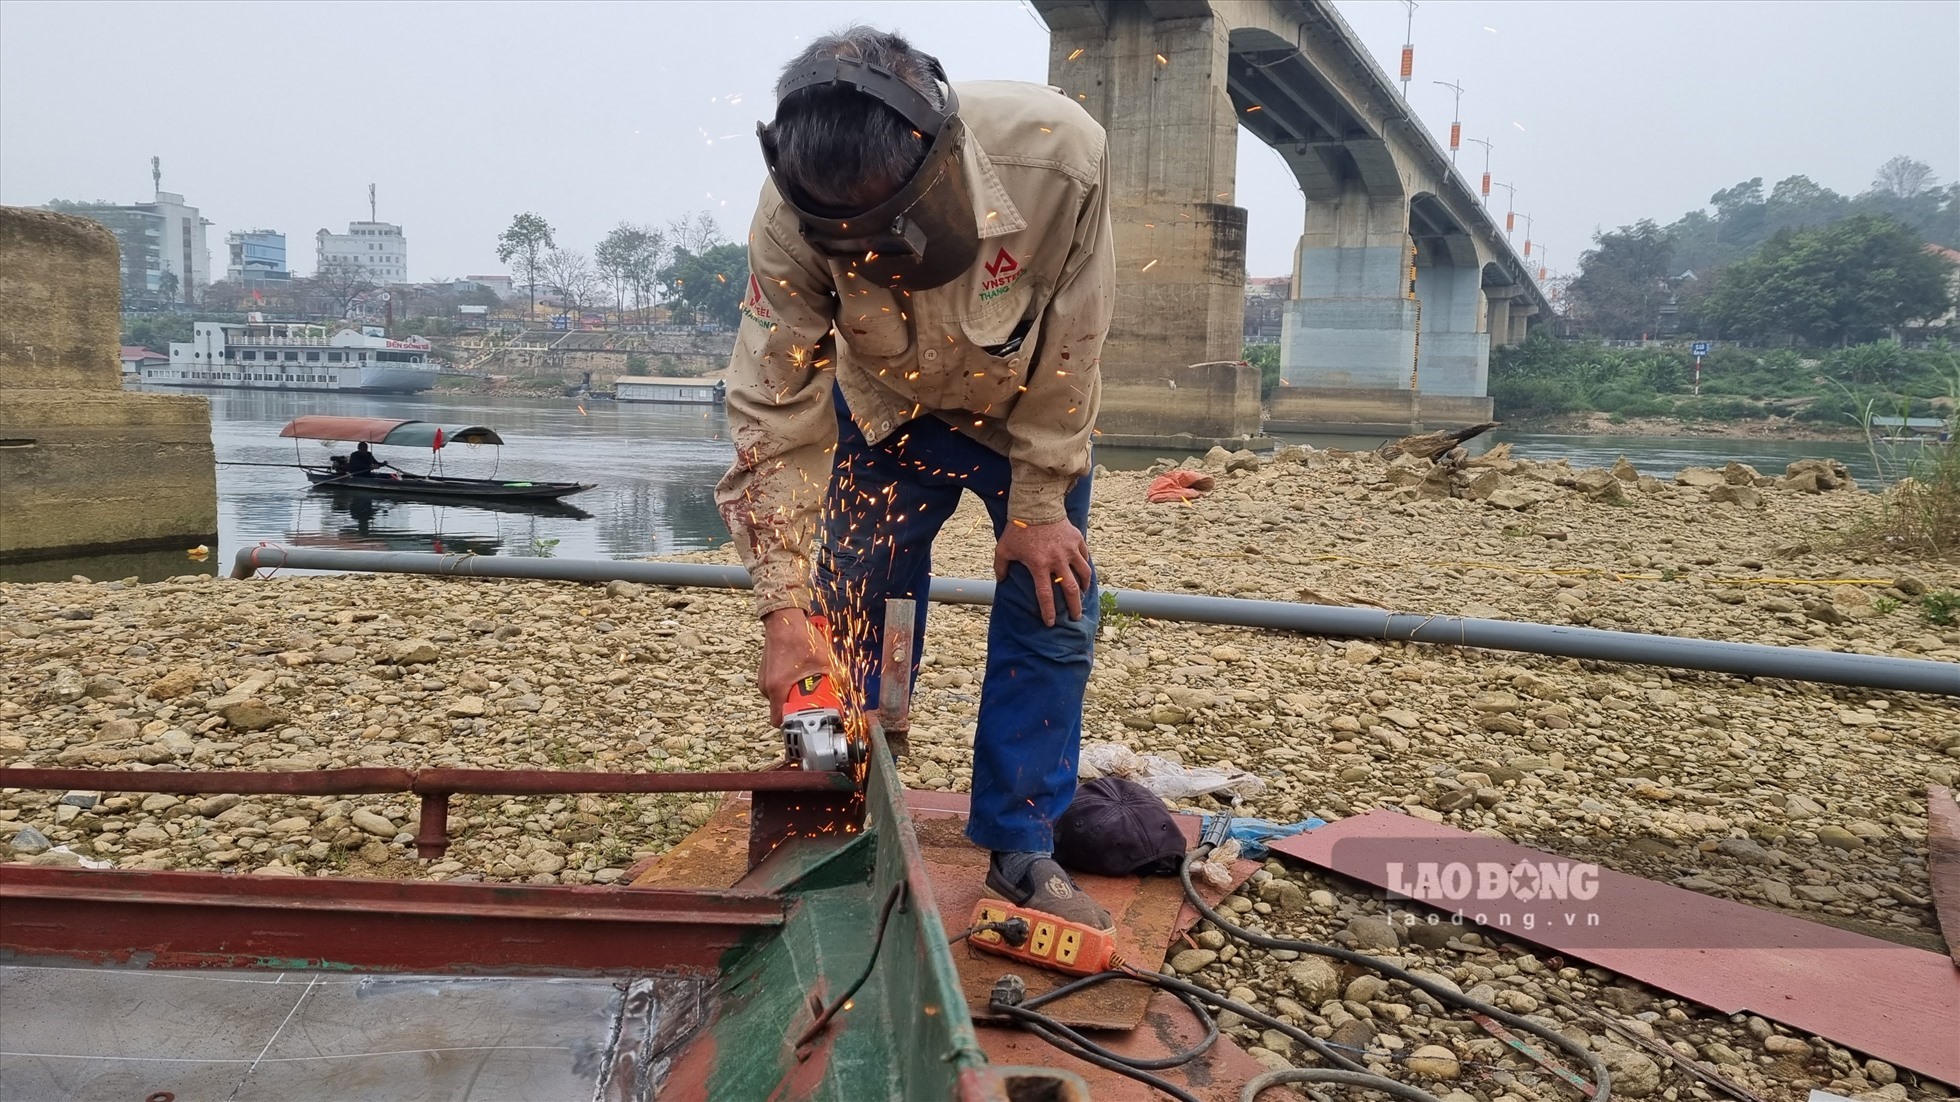 Anh Lê Anh Minh (tổ 4 phường Nông Tiến) bao năm sống bằng nghề nuôi cá trên sông Lô nhưng mấy tháng qua nước sông cạn không thể hạ lồng cá, hiện anh tranh thủ sửa chữa lại thuyền trong thời gian chờ nước.